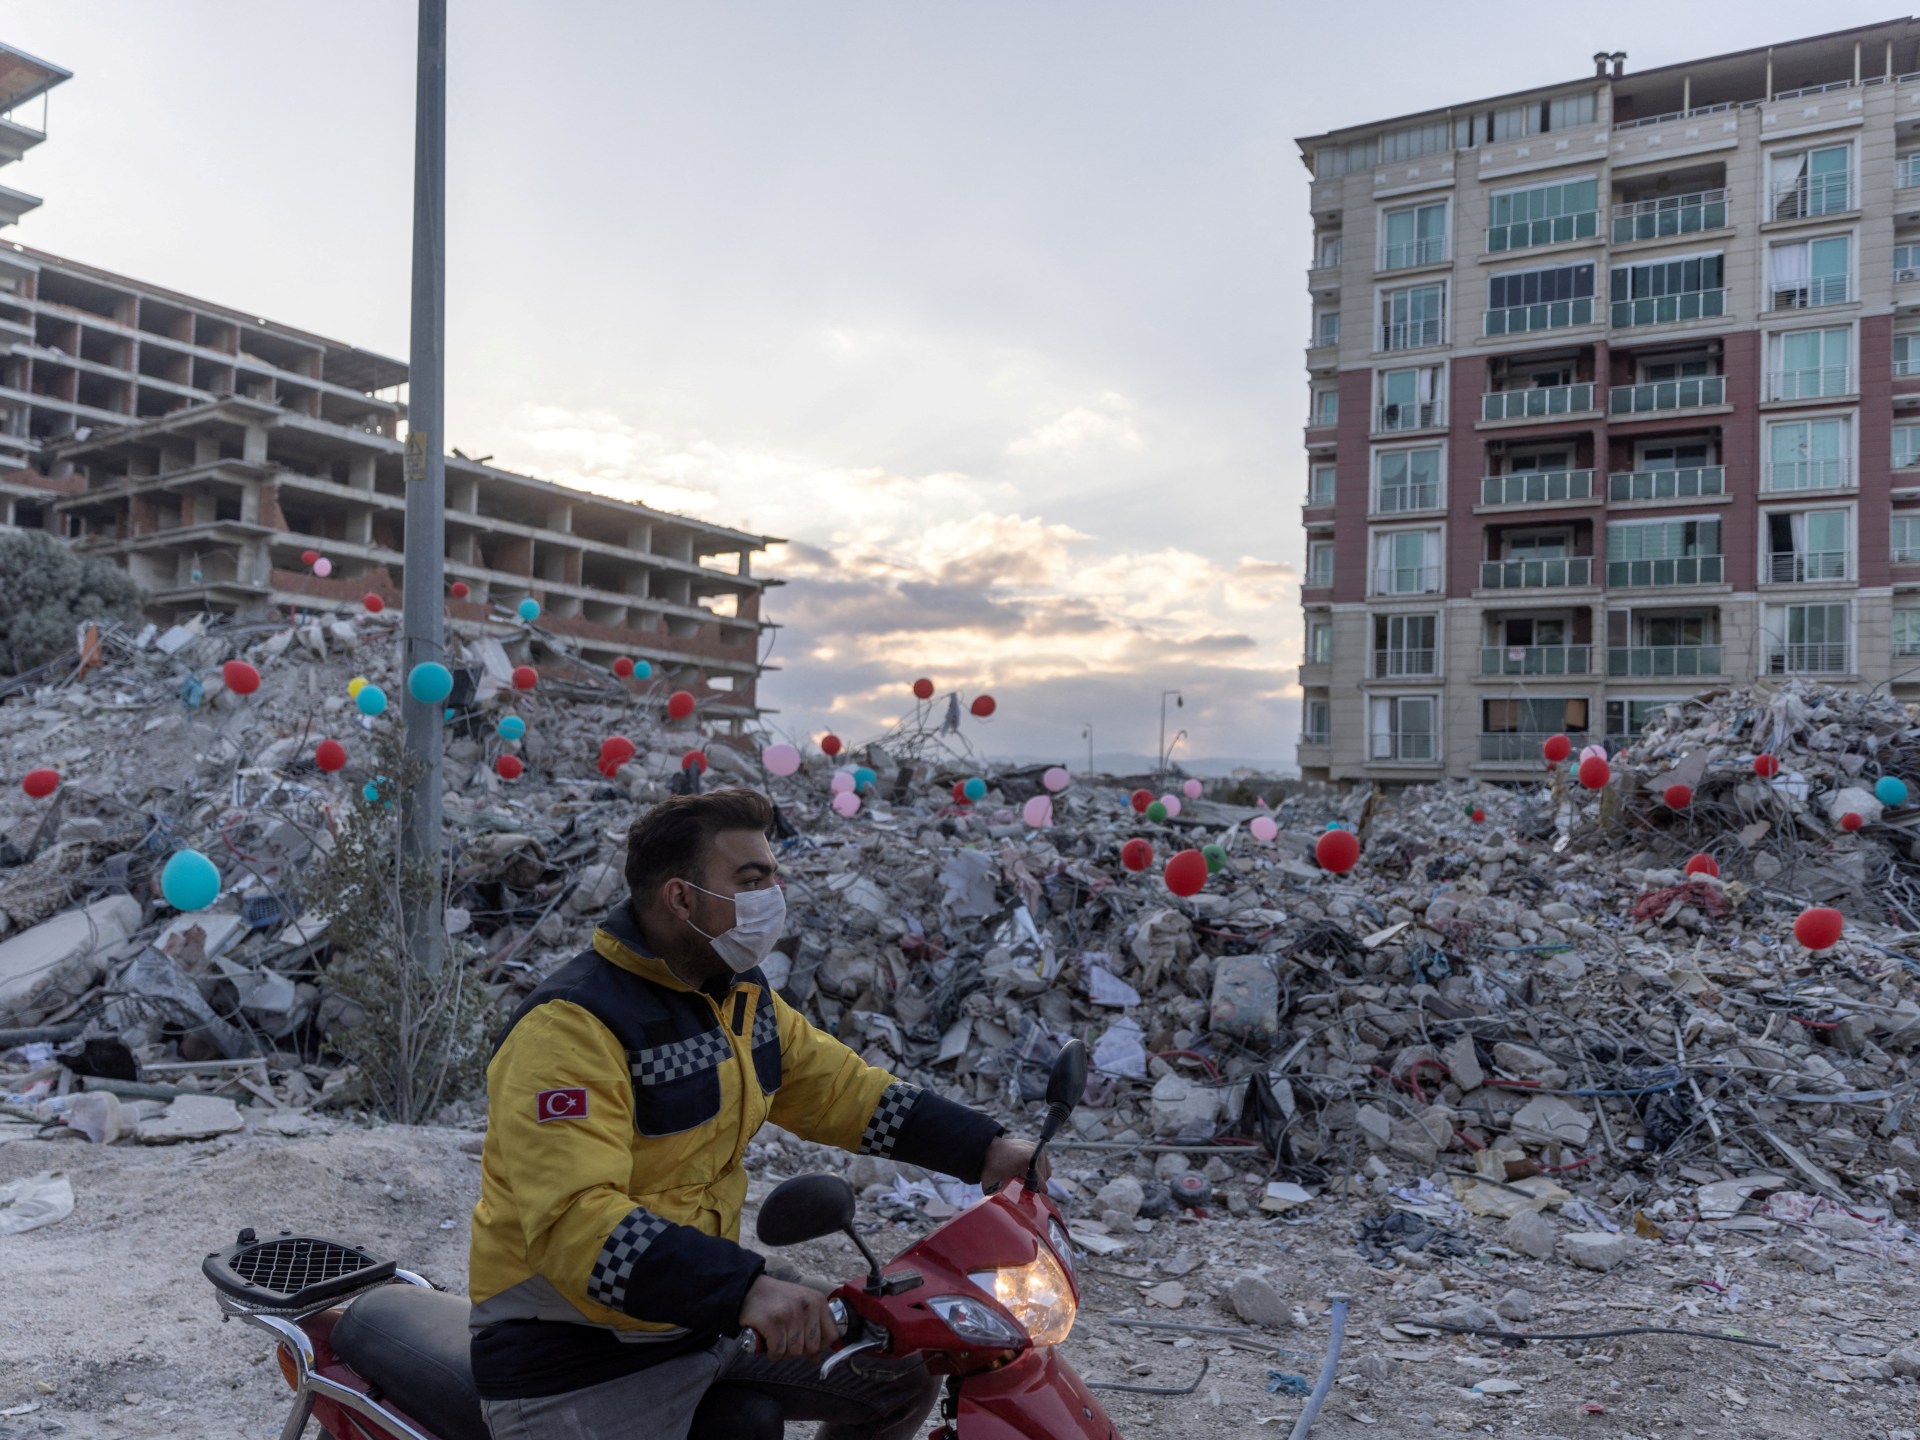 Gempa berkekuatan 5,3 guncang provinsi Nigde tengah Turki |  Berita Gempa Bumi